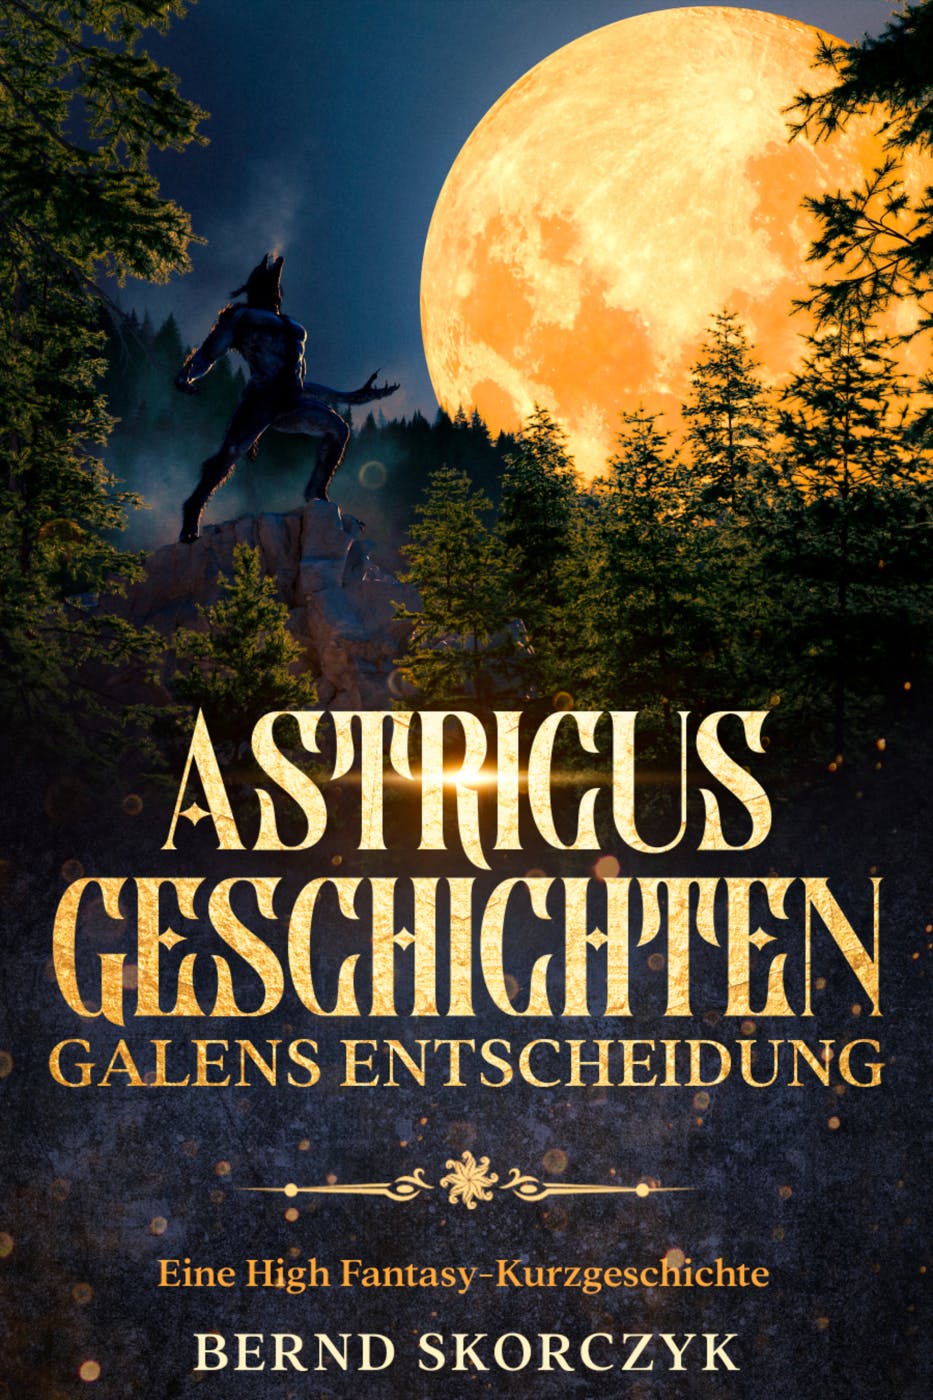 Astricus- Geschichten: Galens Entscheidung: Eine High Fantasy-Kurzgeschichte - Bernd Skorczyk